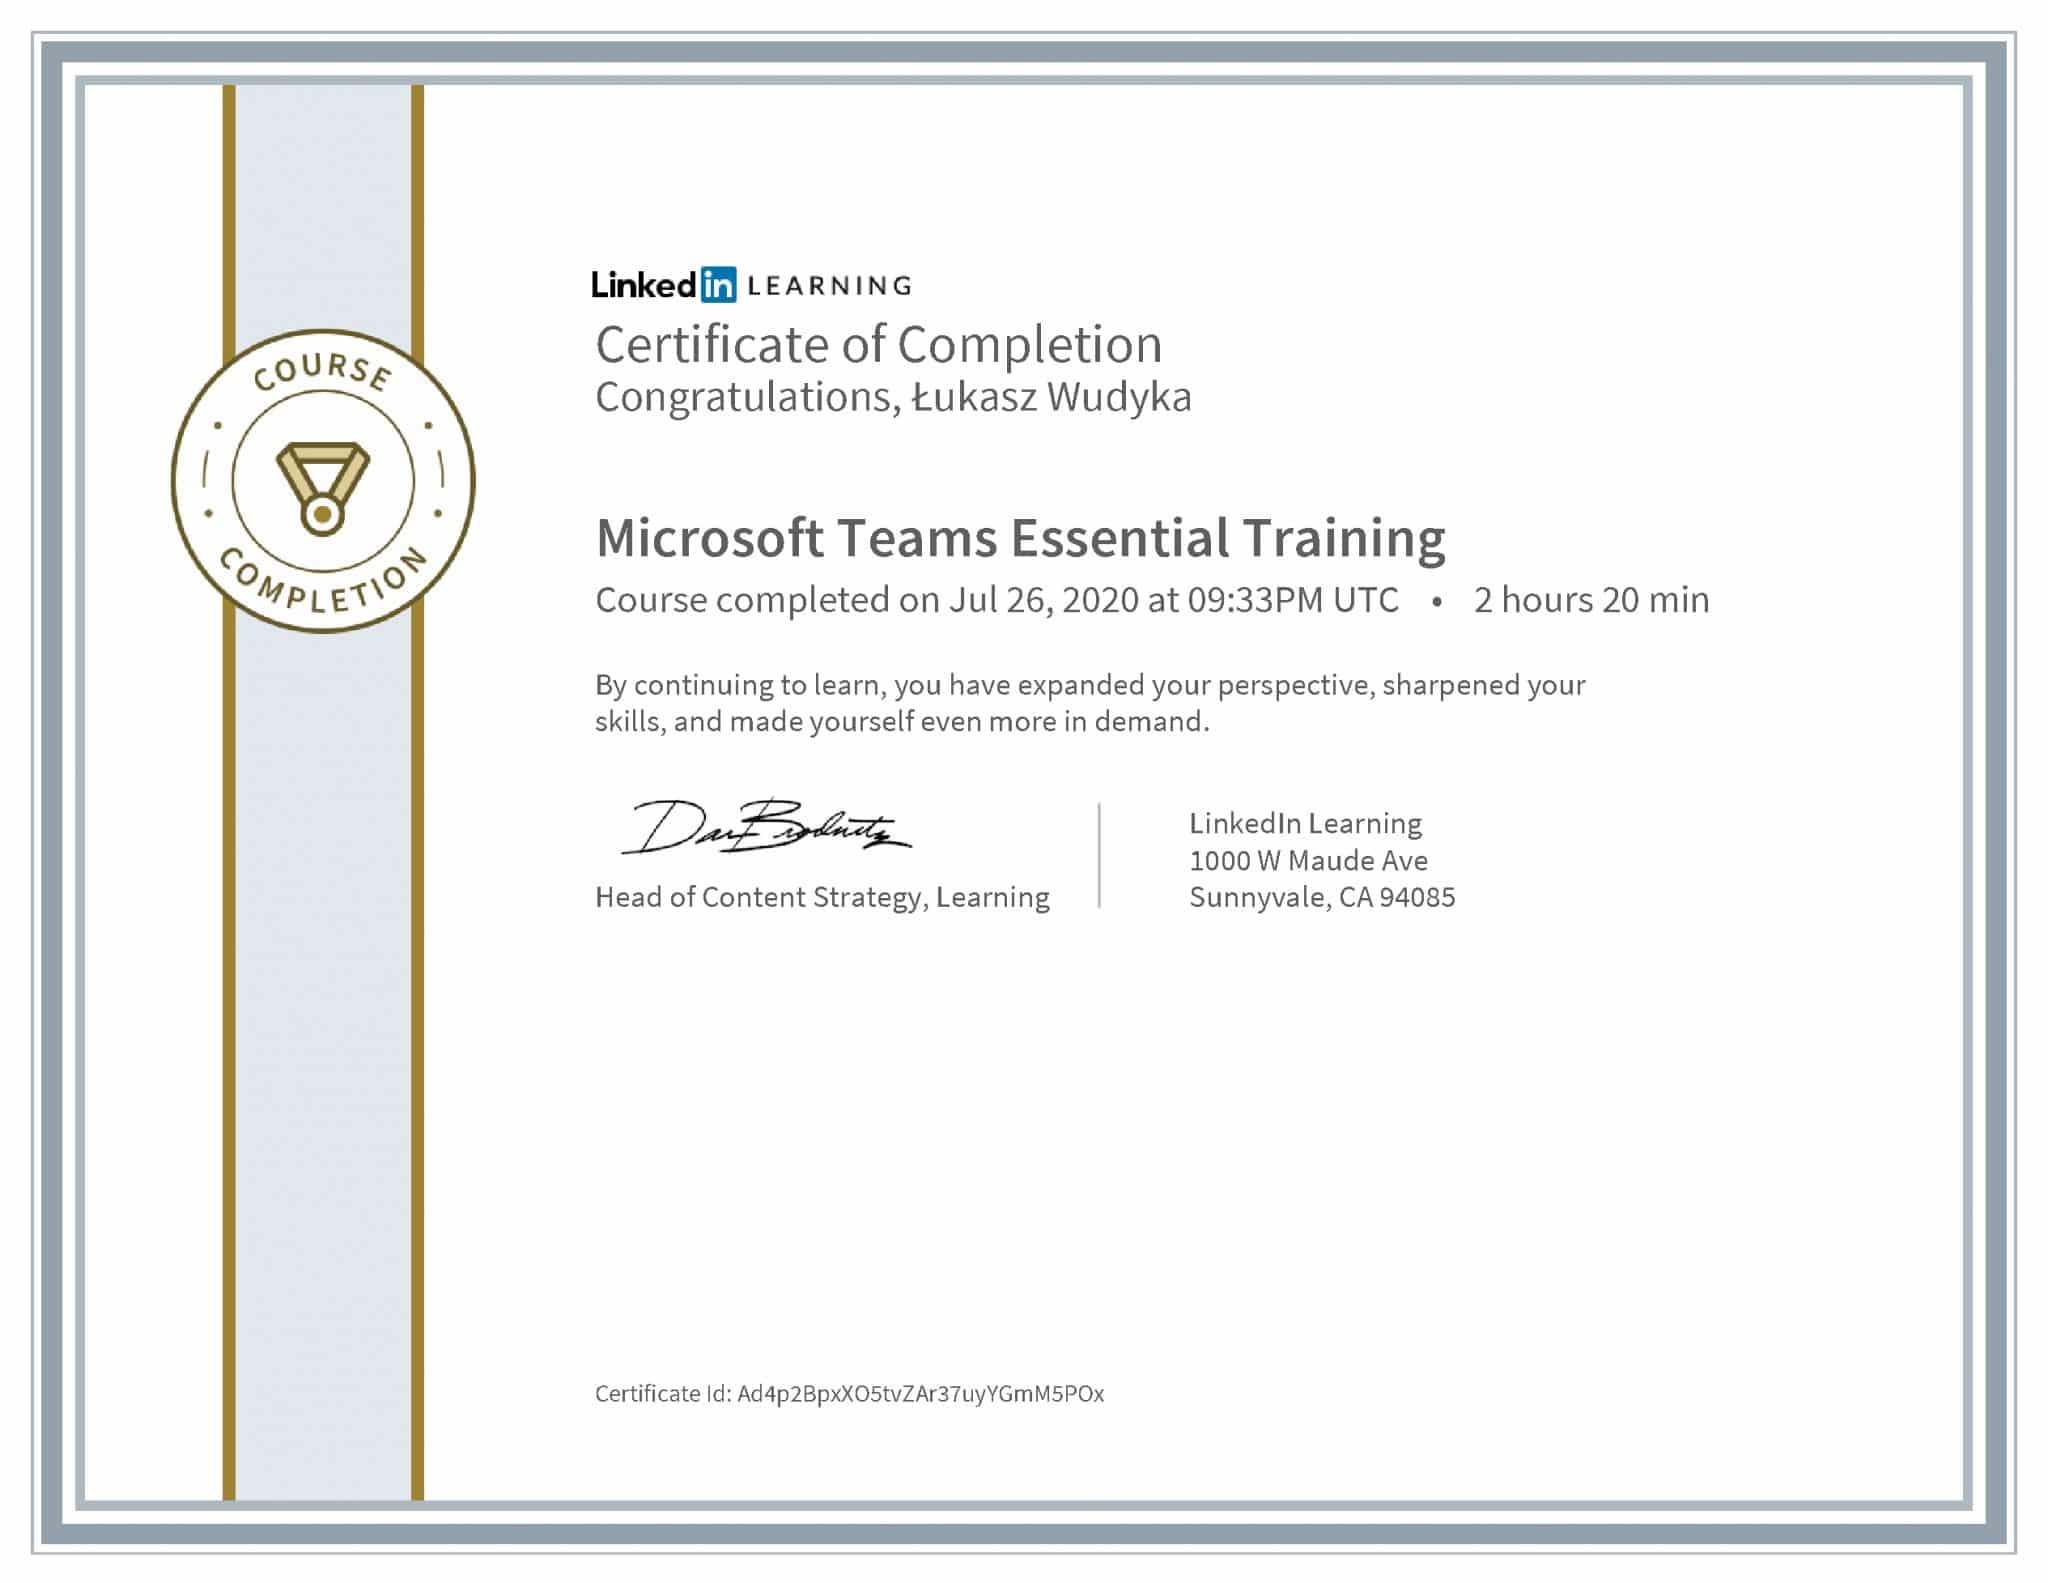 Łukasz Wudyka certyfikat LinkedIn Microsoft Teams Essential Training